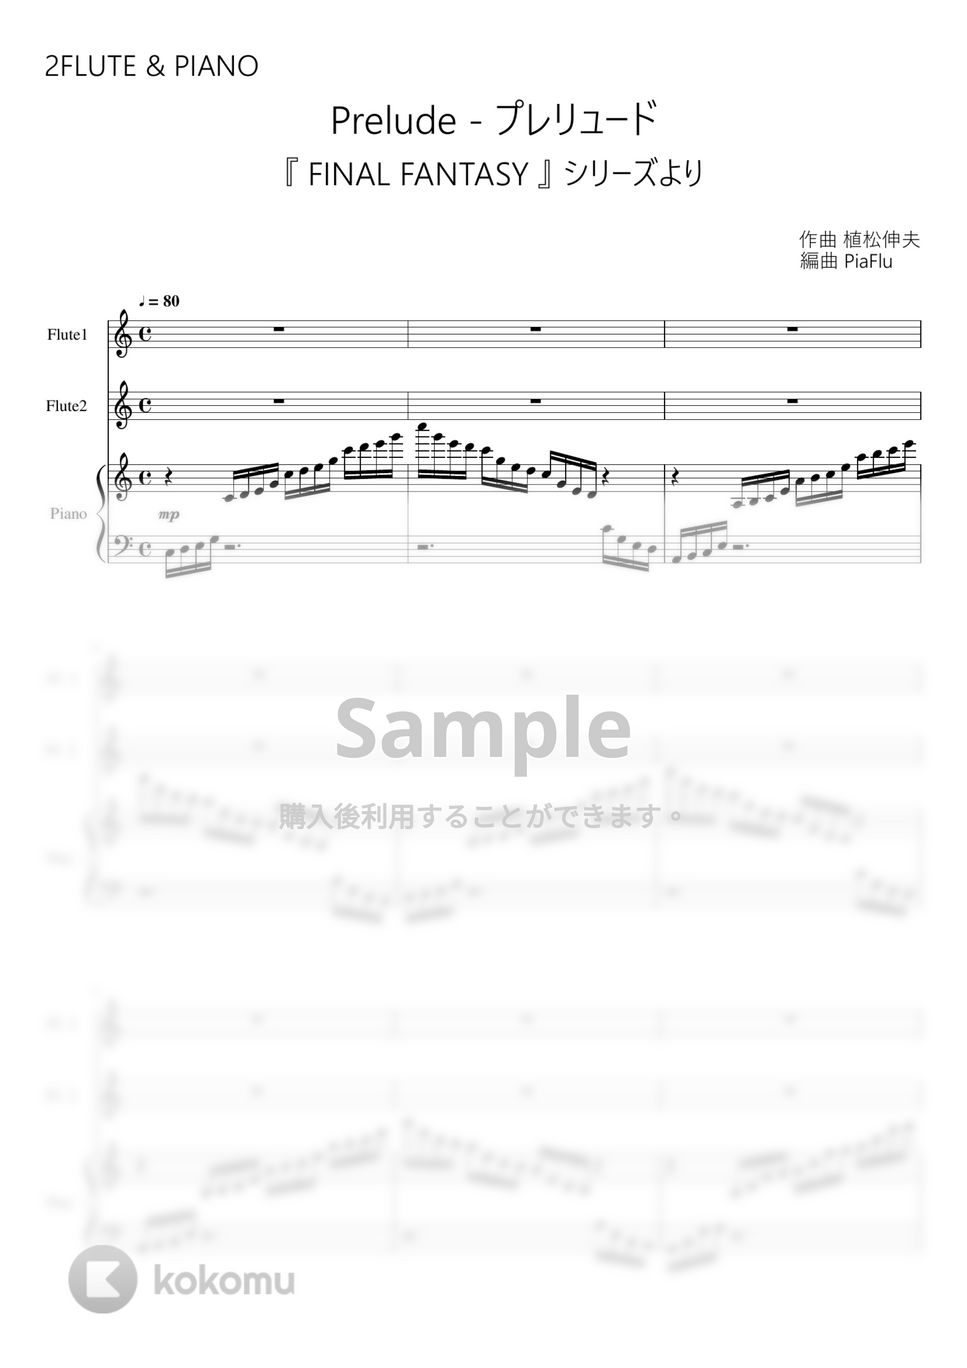 FINAL FANTASY - プレリュード (フルート2重奏&ピアノ) by Piaflu